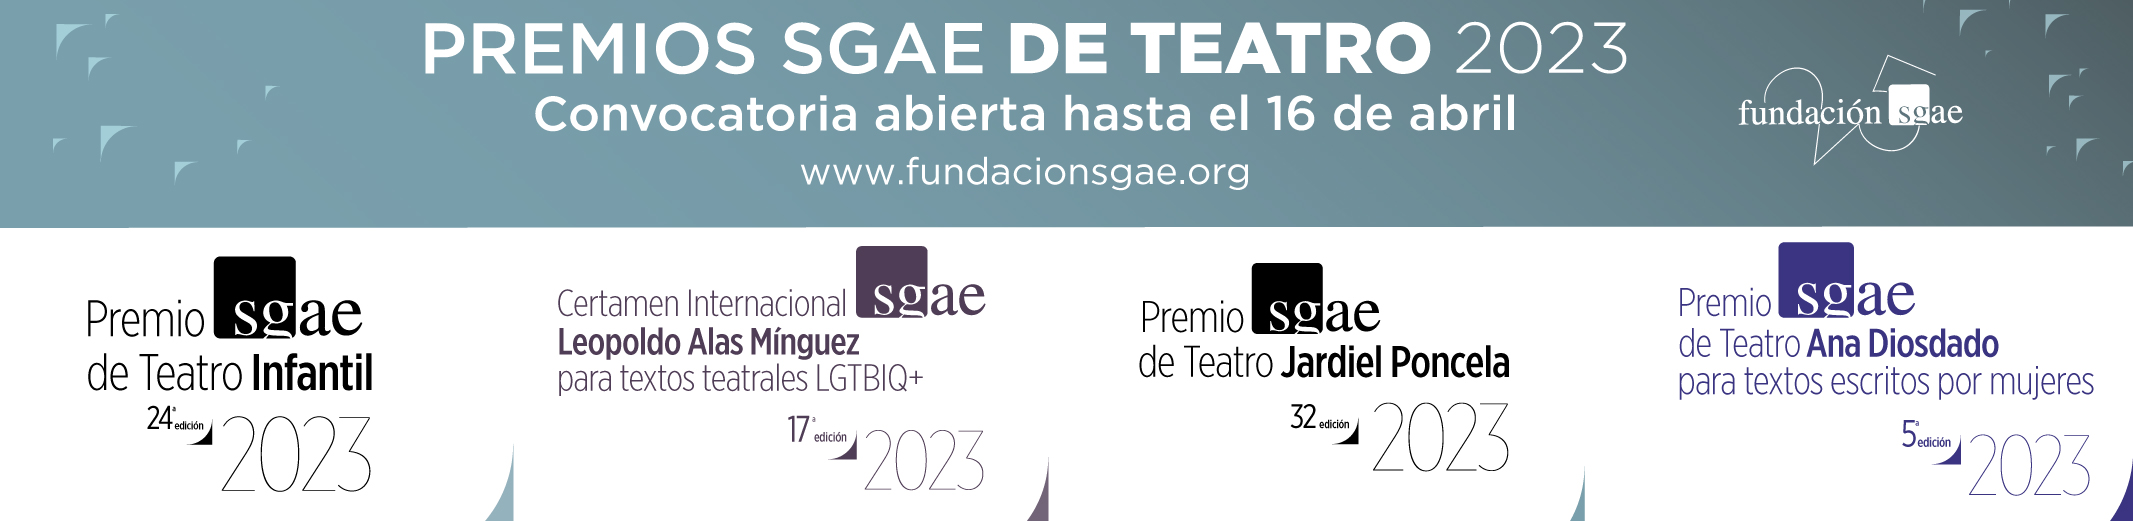 Fundación SGAE Premios Teatro 2023 1024x250